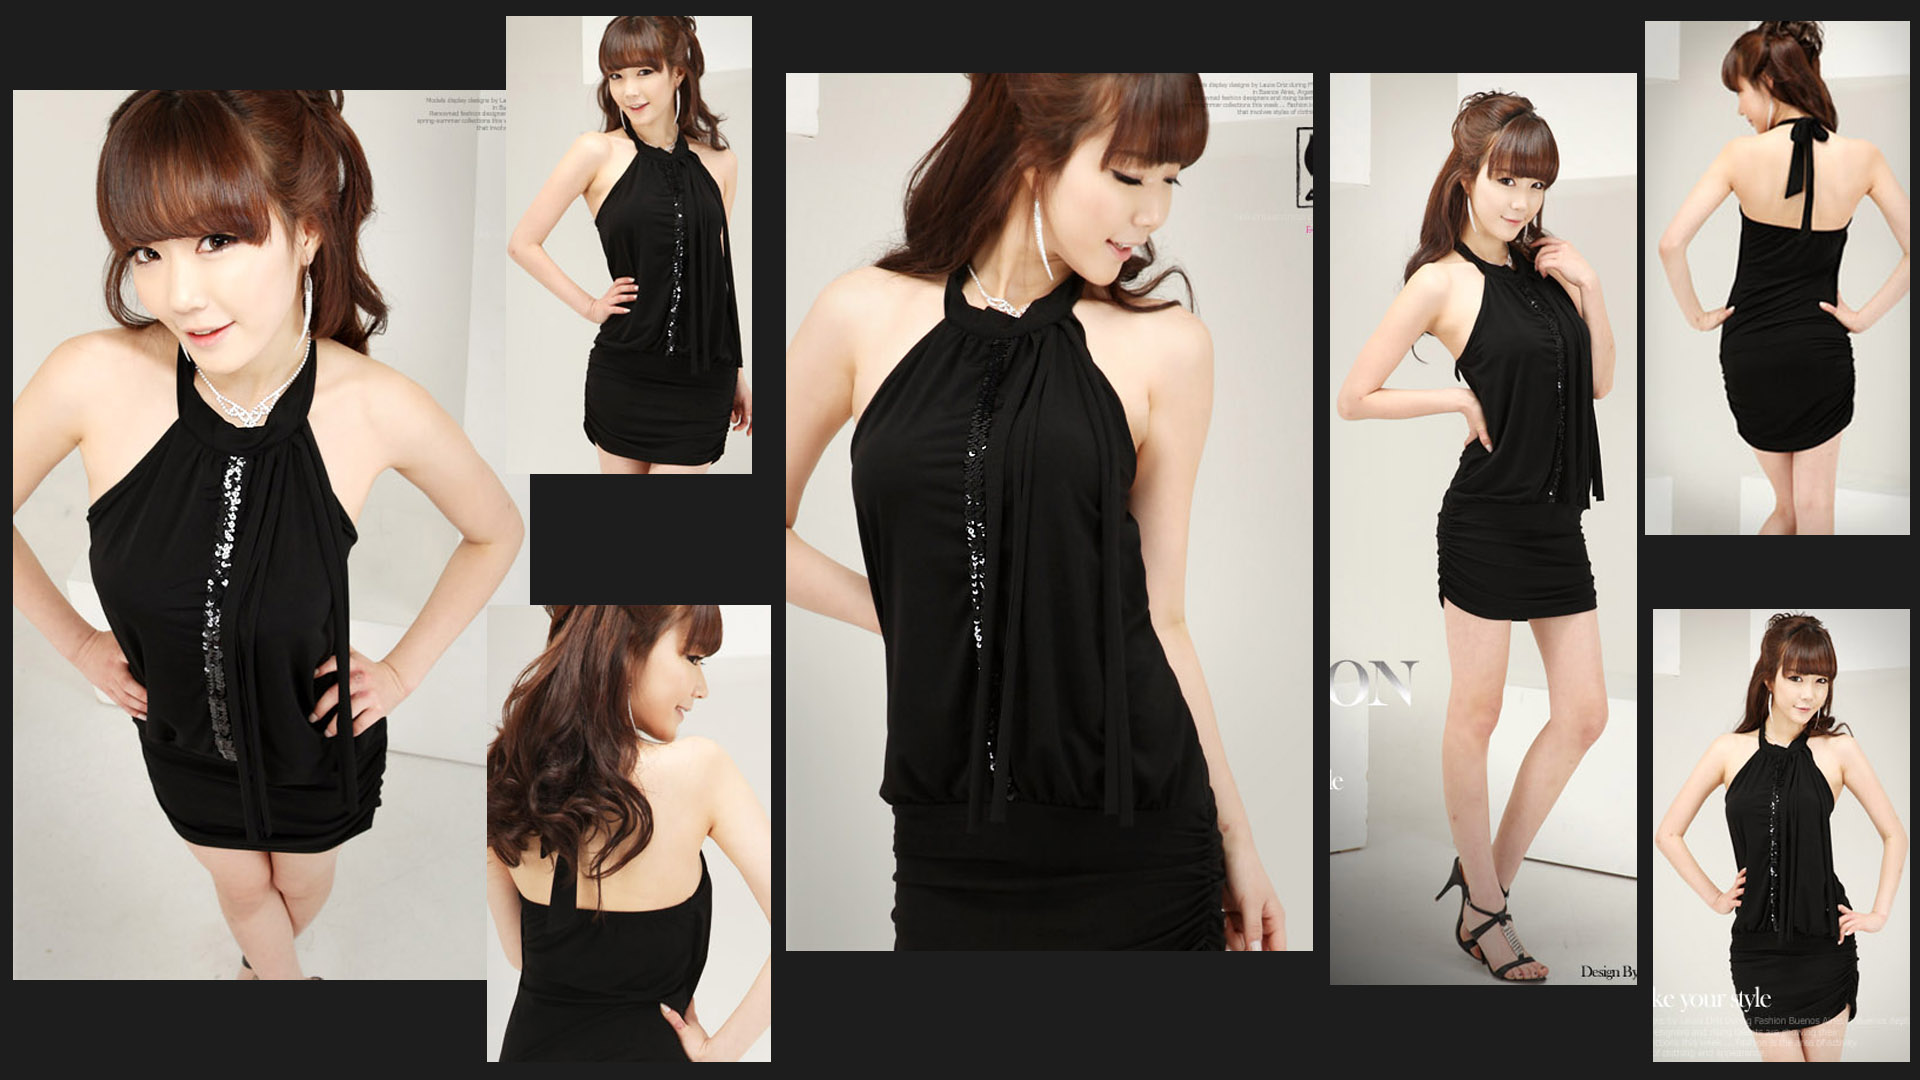 brunettes, women, Asians, black dress, bangs - desktop wallpaper